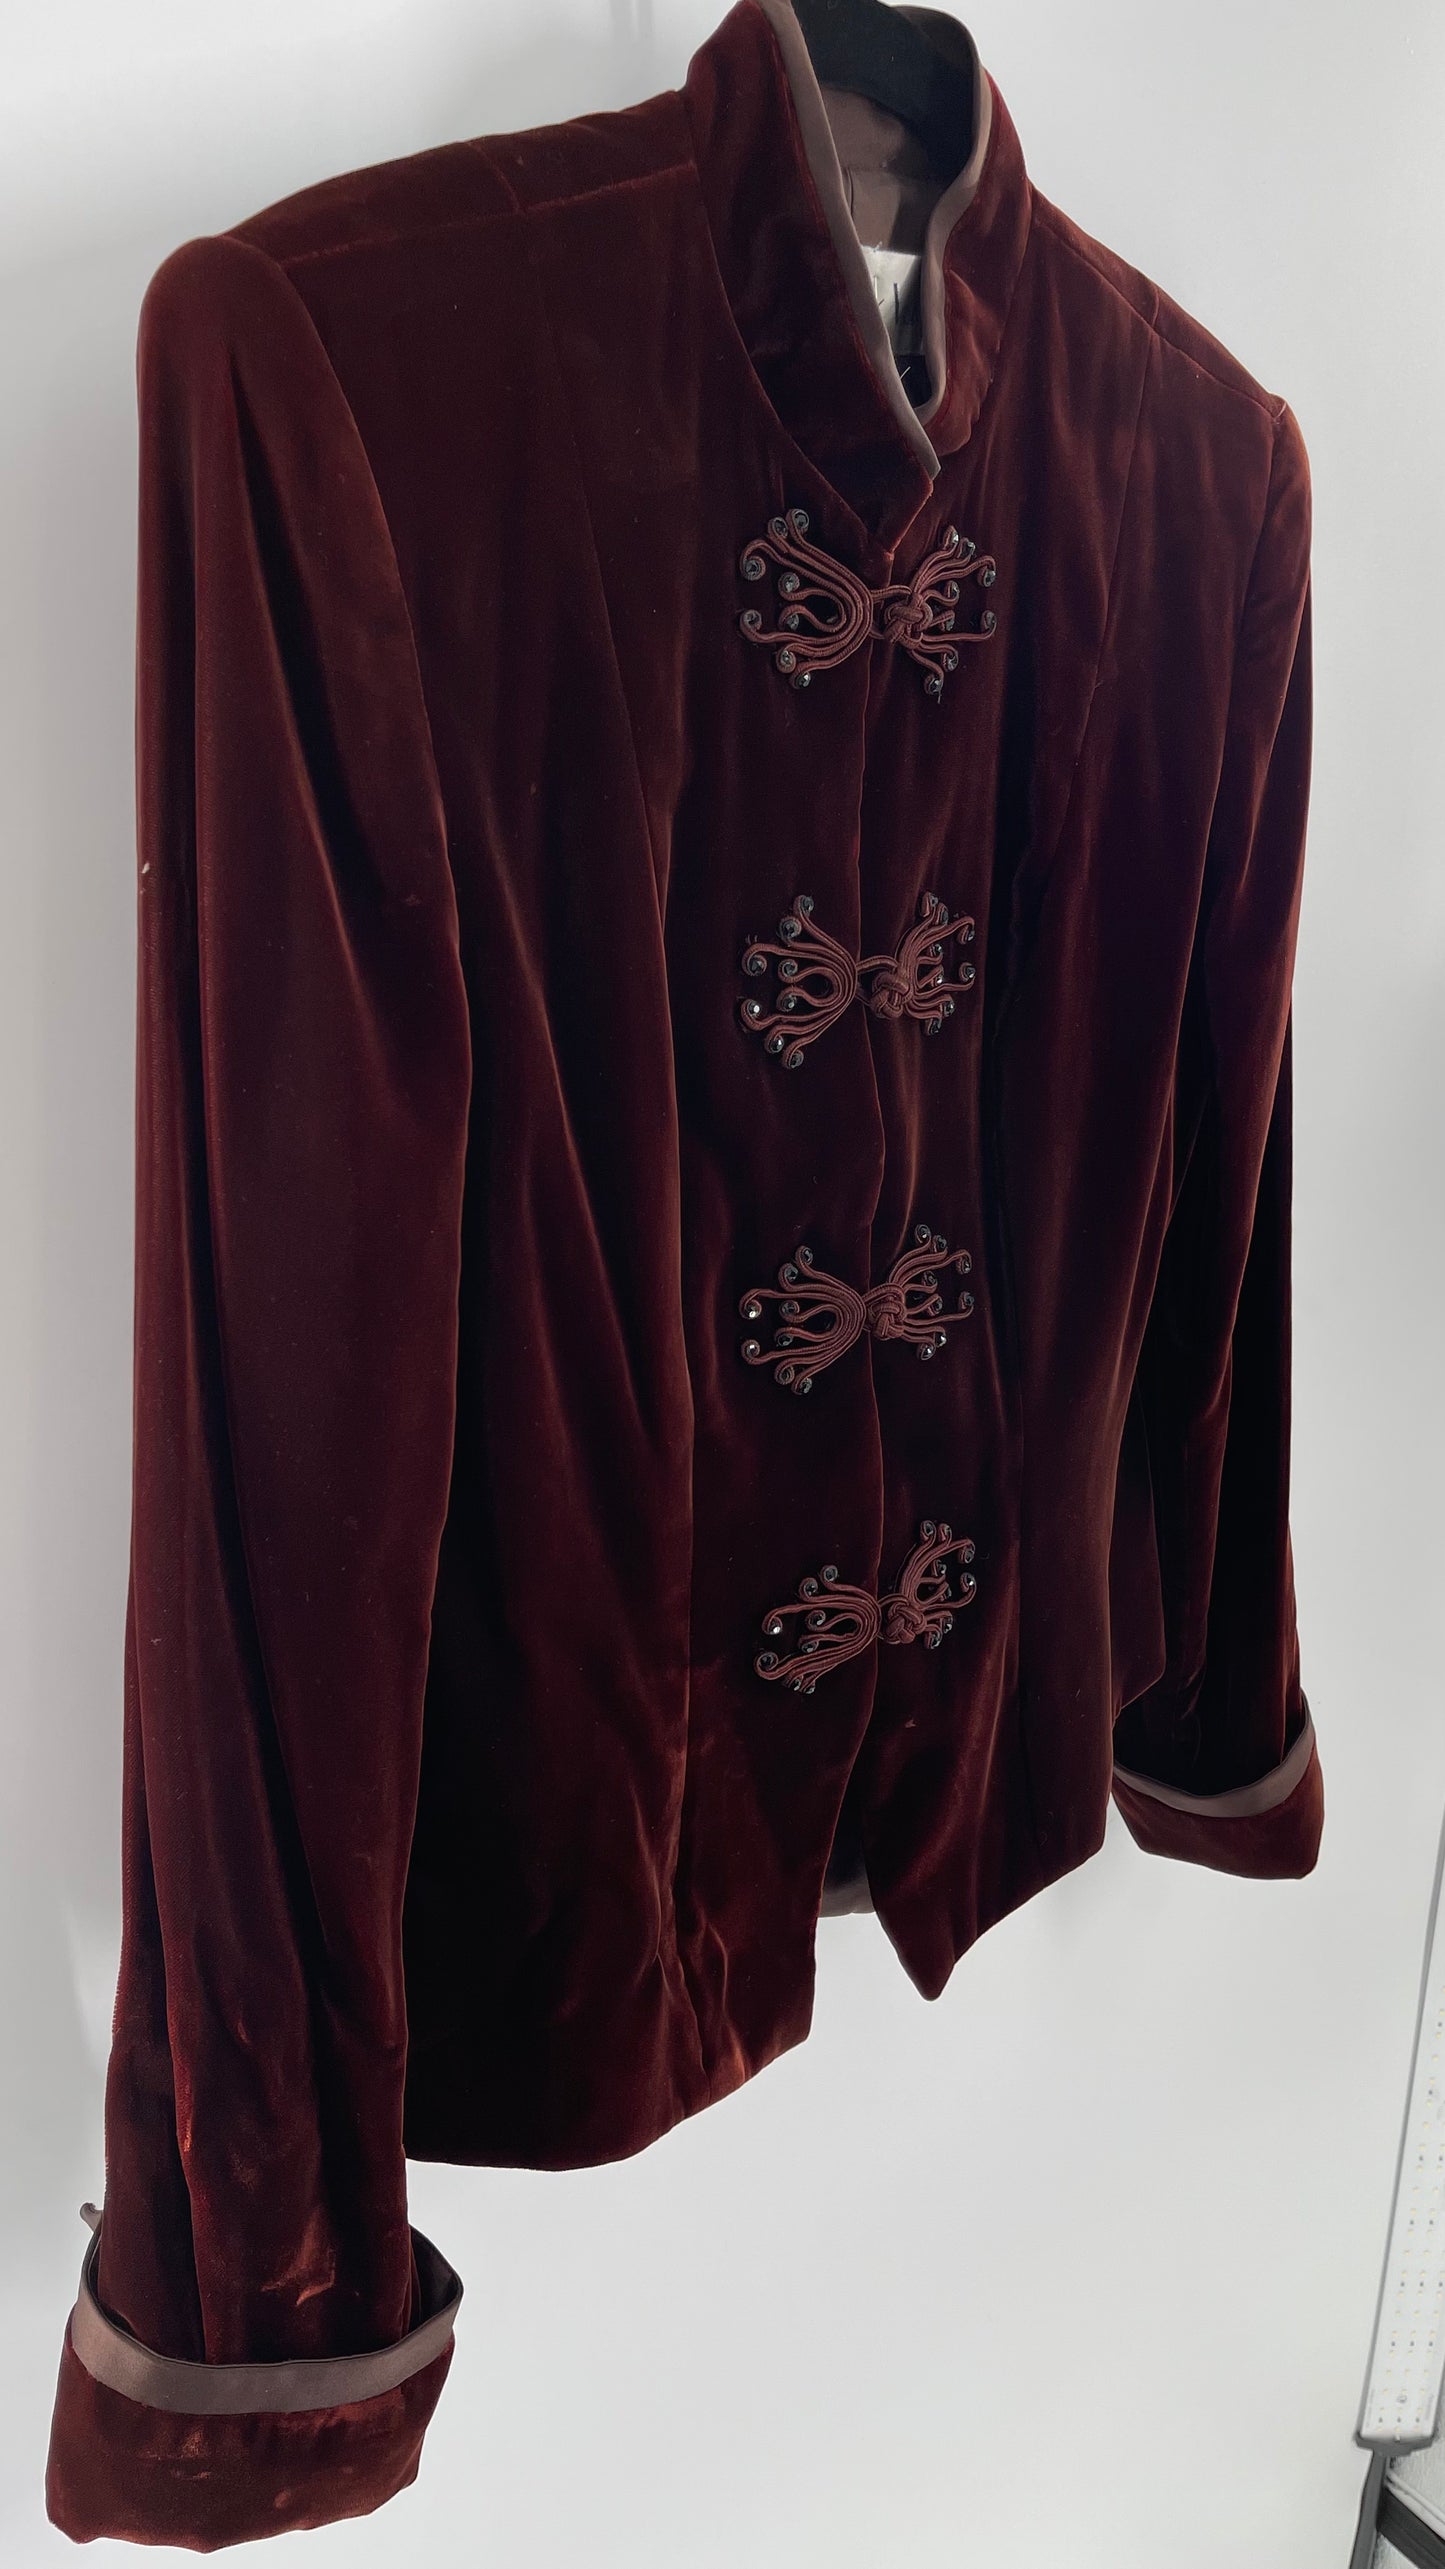 Vintage Anthony Vask Blood Red Burgundy Velvet Coat Jacket with Rope Closure Detailing (C)(10)